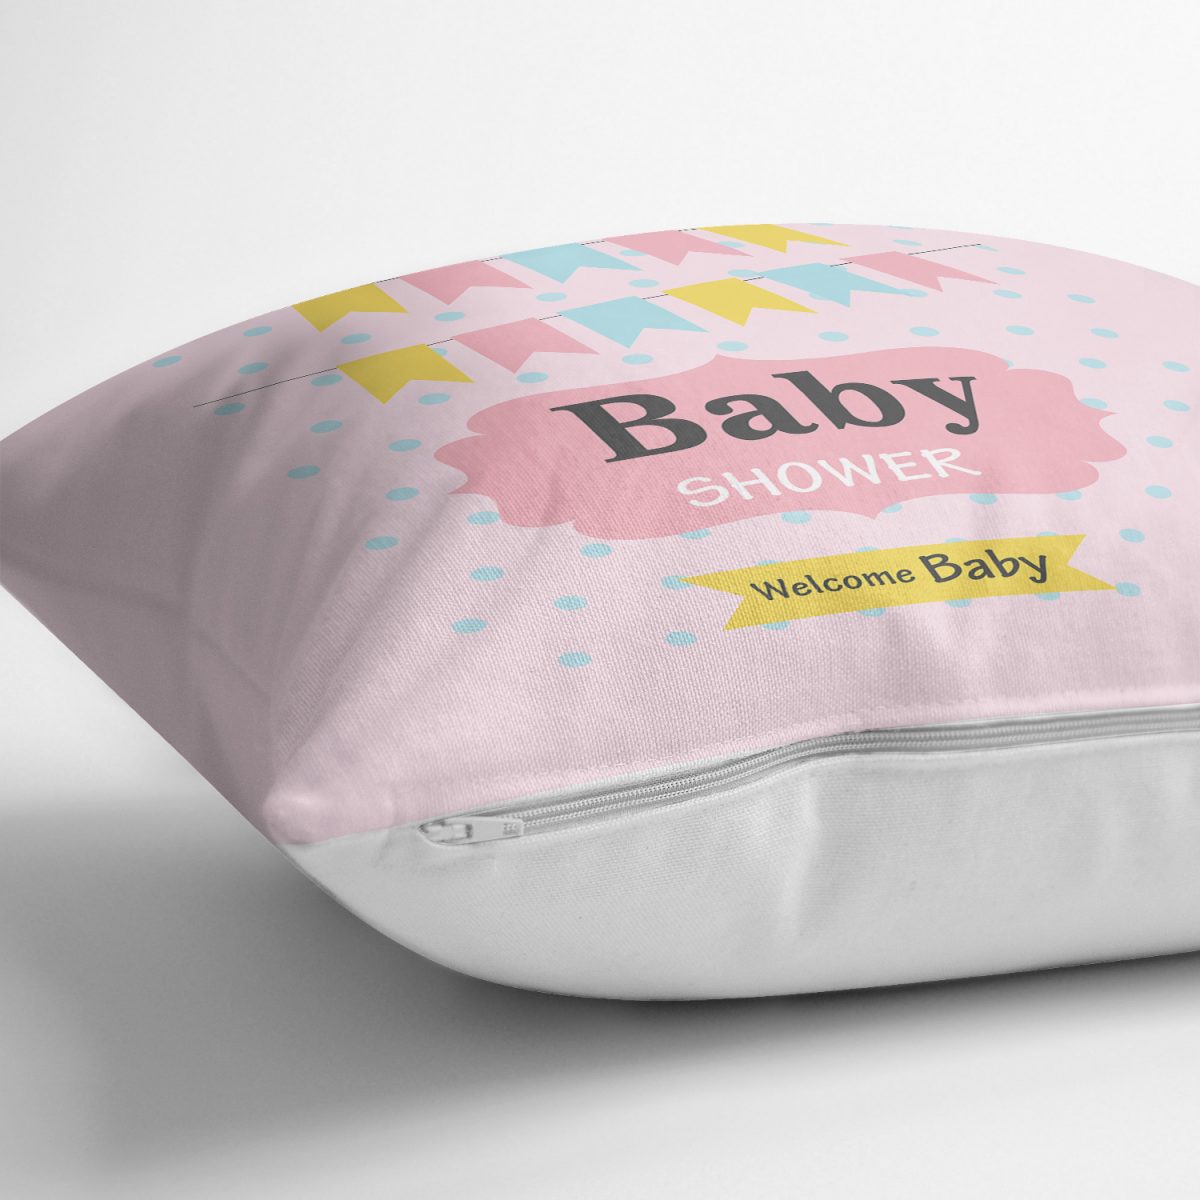 Puanlı Baby Shower Desenli Dijital Baskılı Bebek Odası Yastık Kılıfı Realhomes